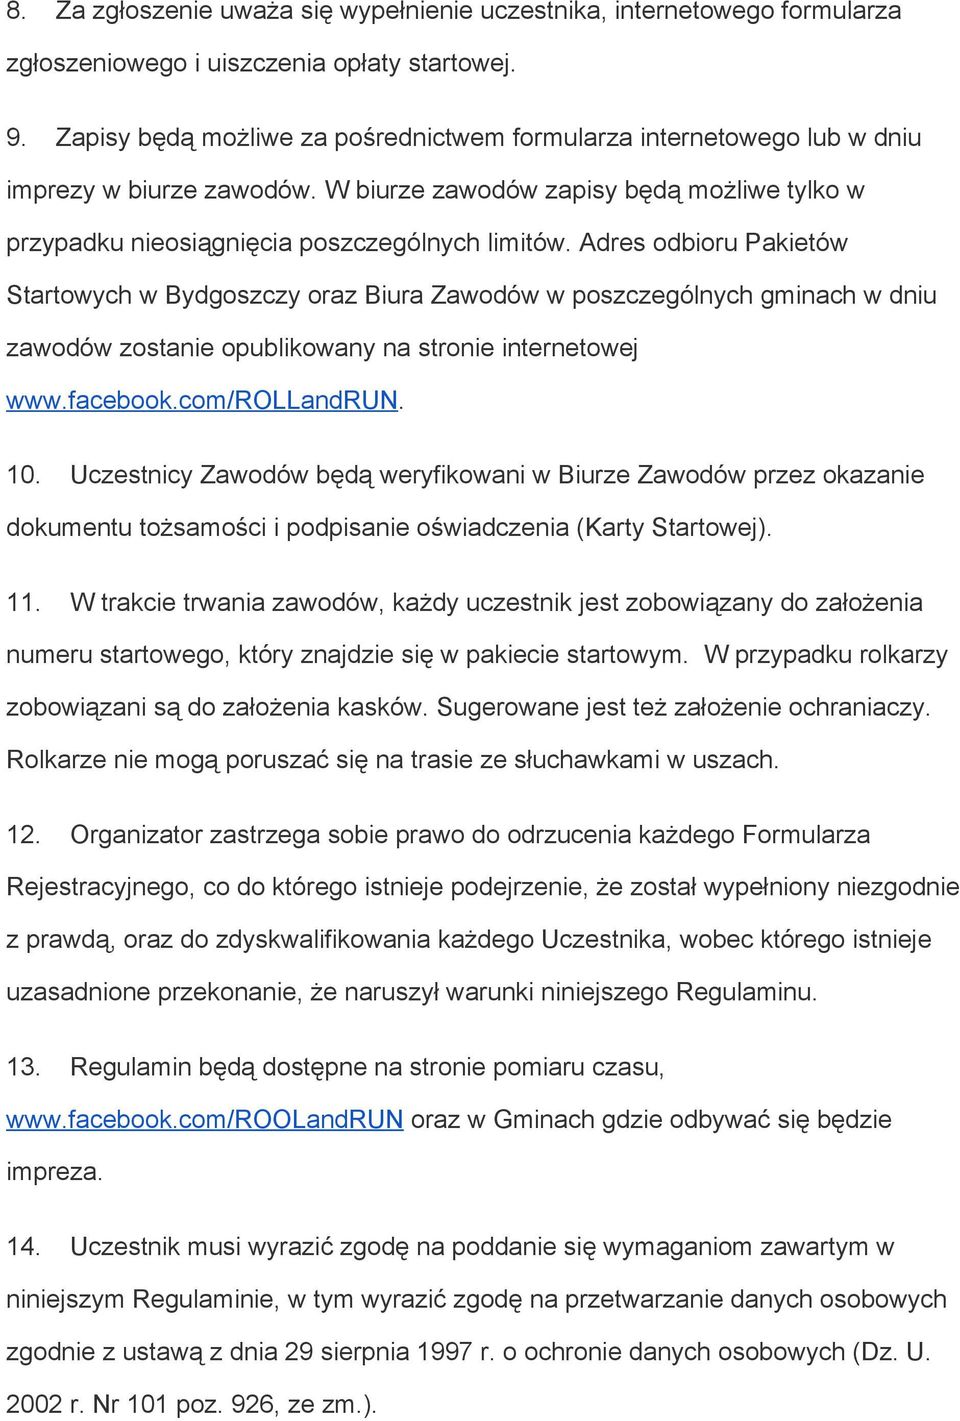 Adres odbioru Pakietów Startowych w Bydgoszczy oraz Biura Zawodów w poszczególnych gminach w dniu zawodów zostanie opublikowany na stronie internetowej www.facebook.com/rollandrun. 10.